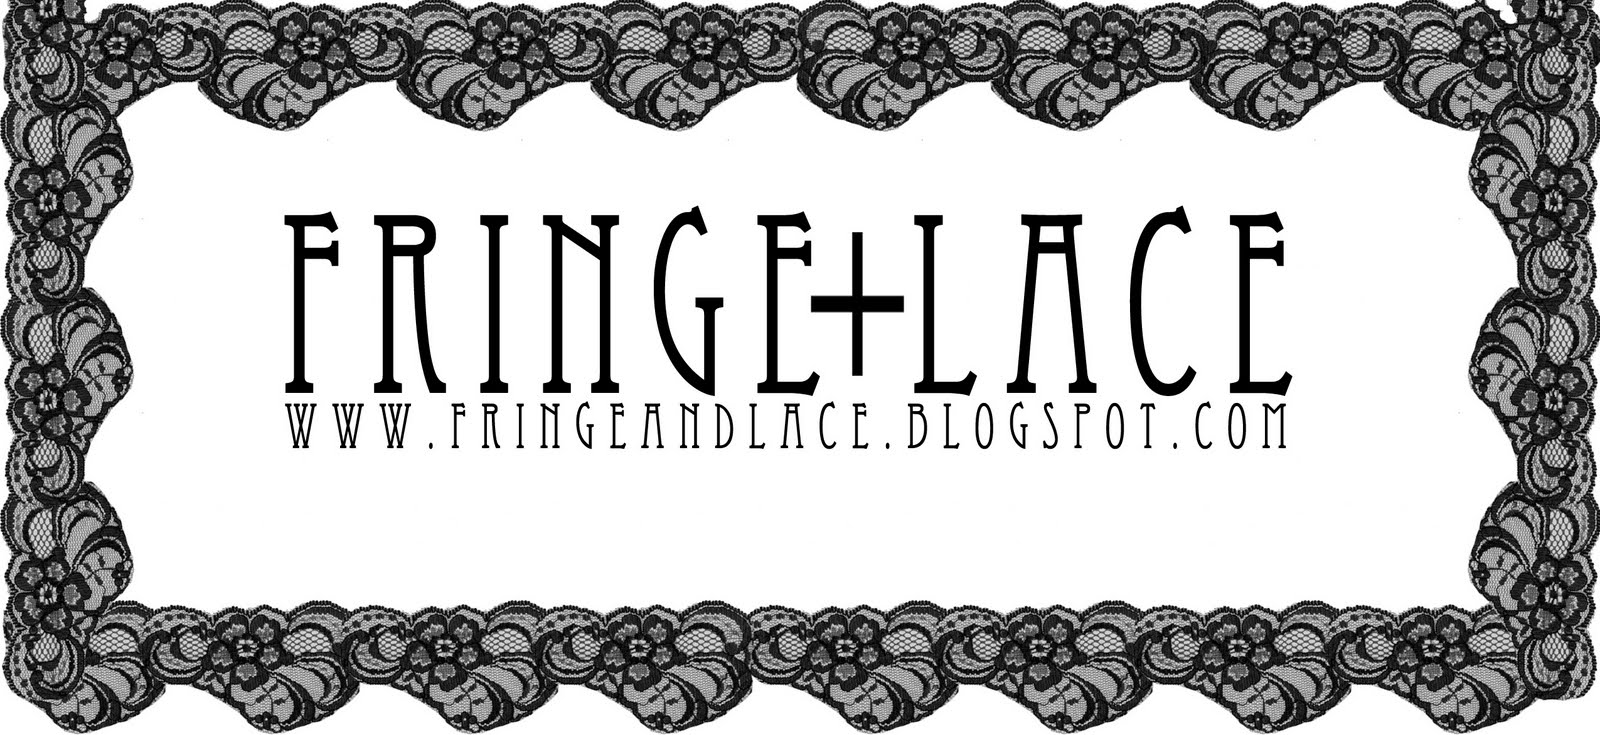 Fringe and Lace